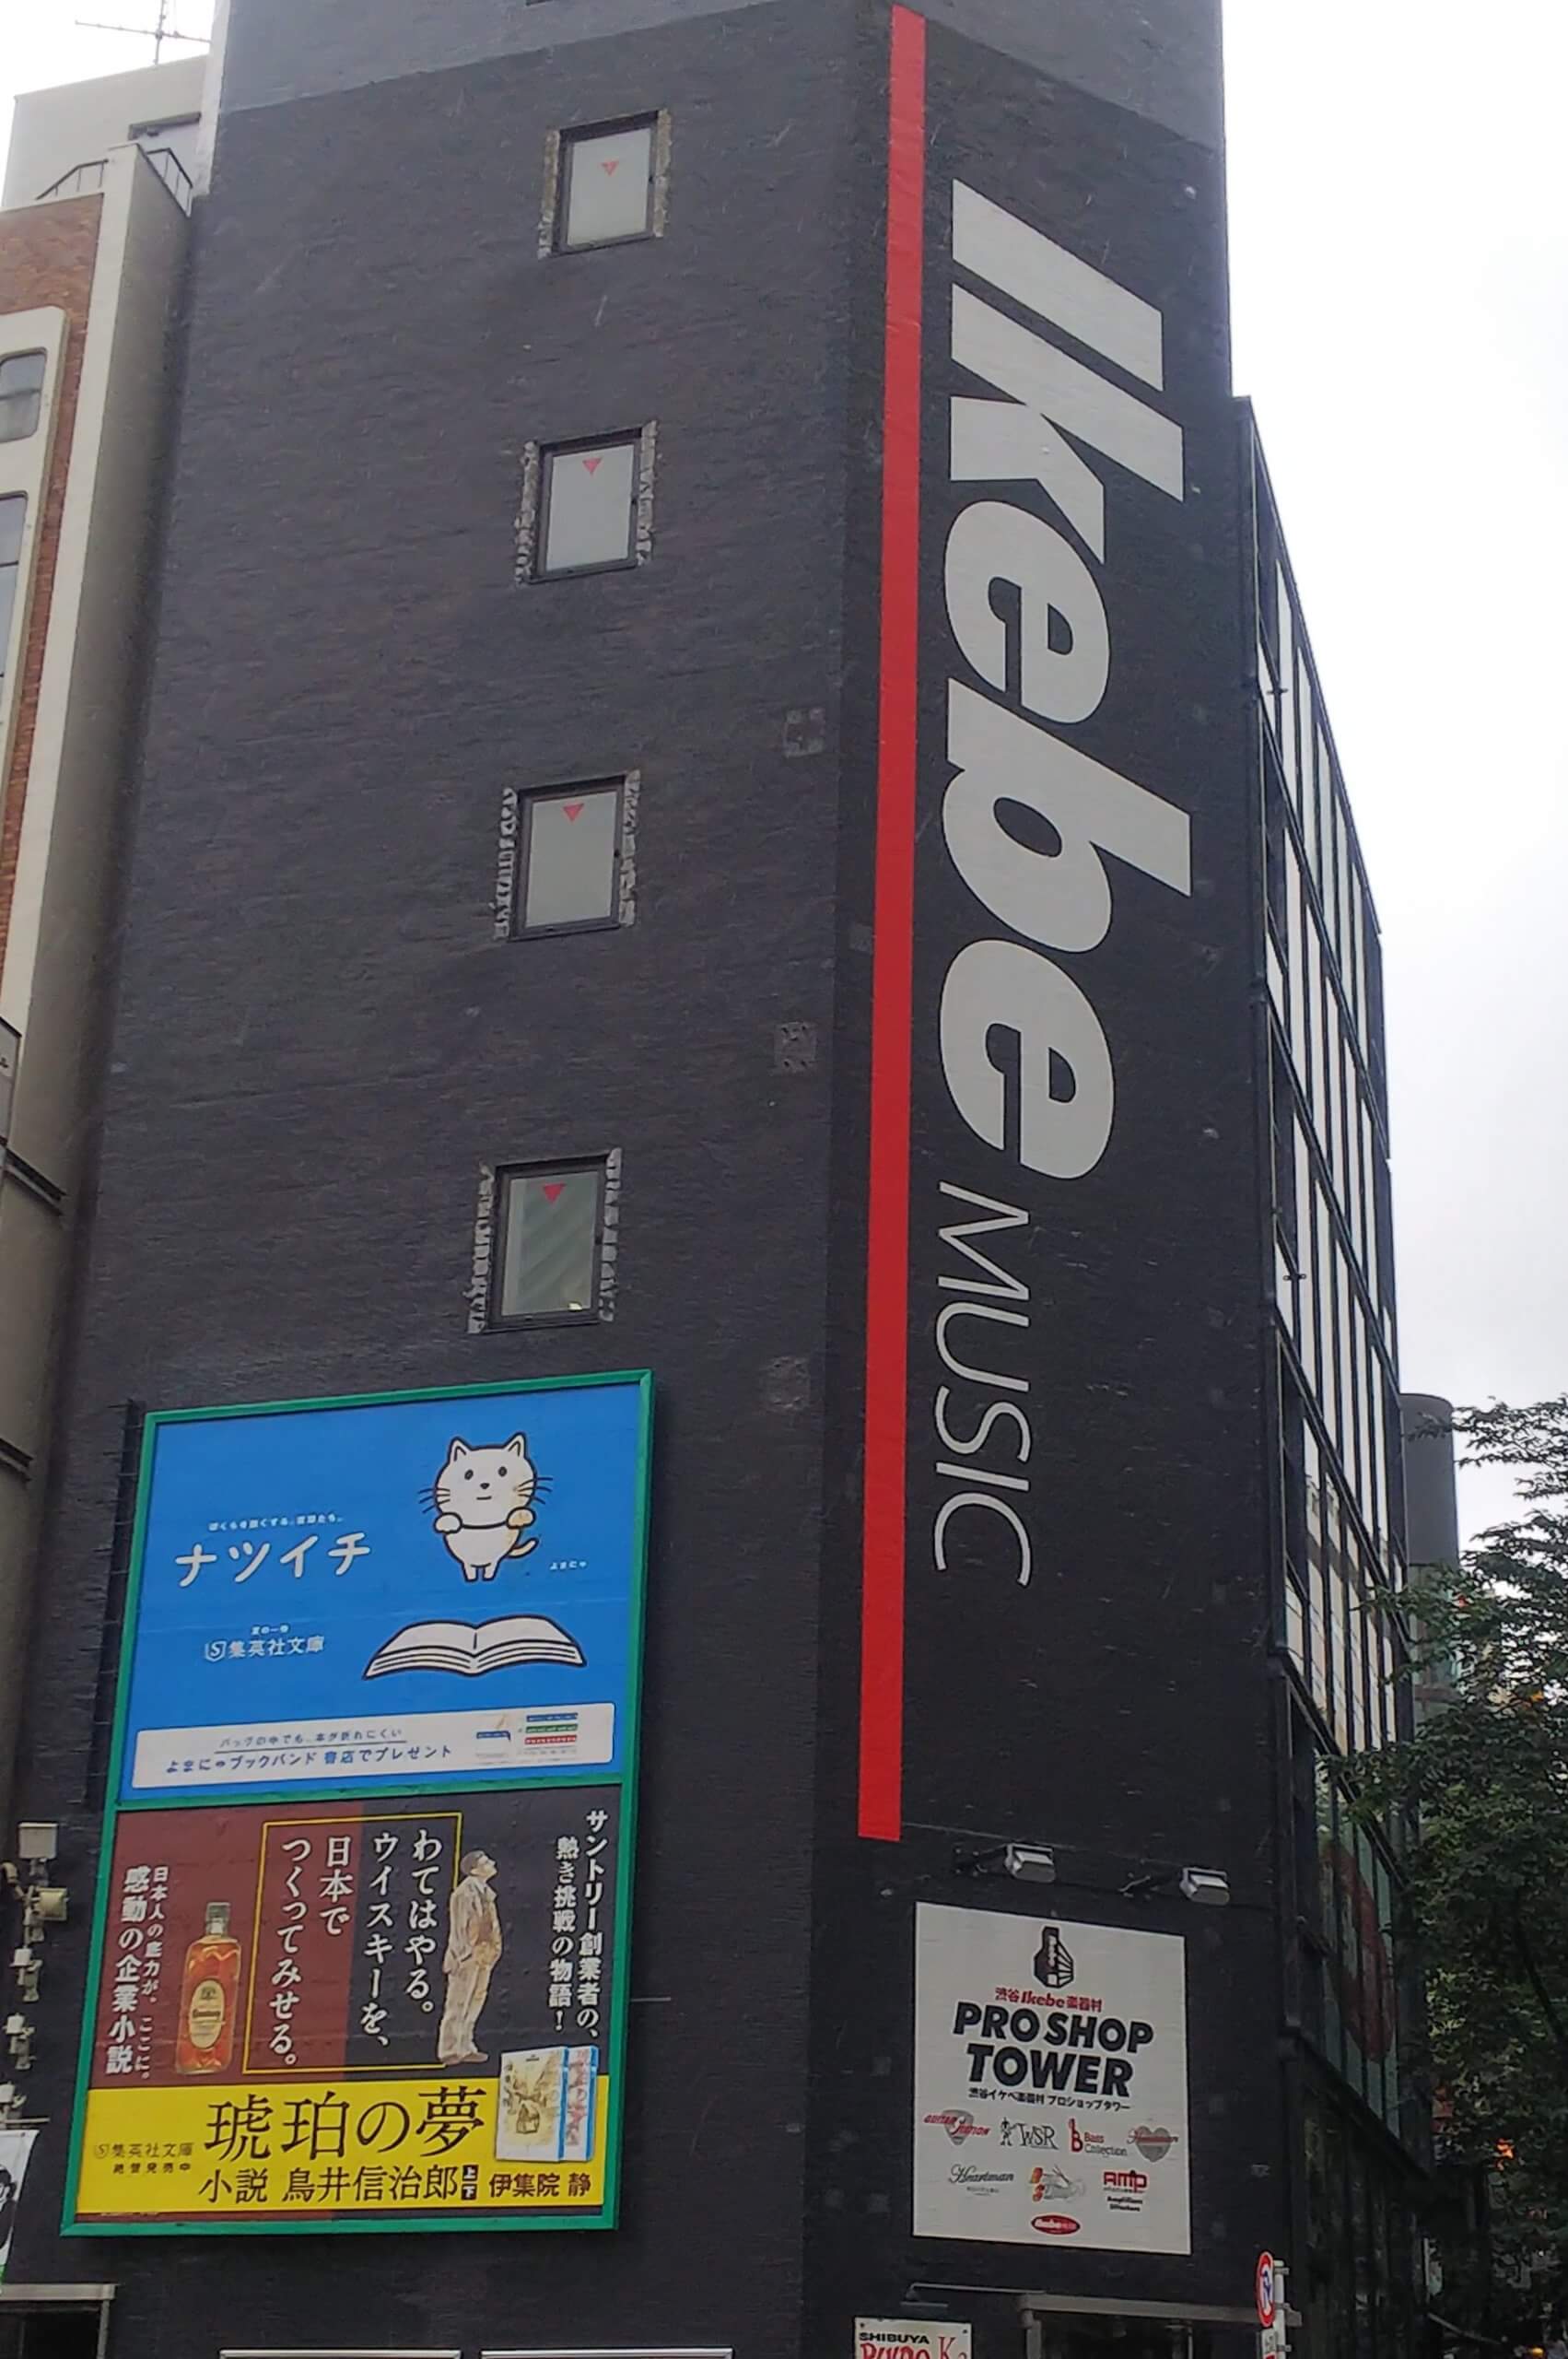 渋谷エリアの楽器屋 ギター屋を紹介 それぞれの店舗のおすすめの特徴は エレキギターと共に